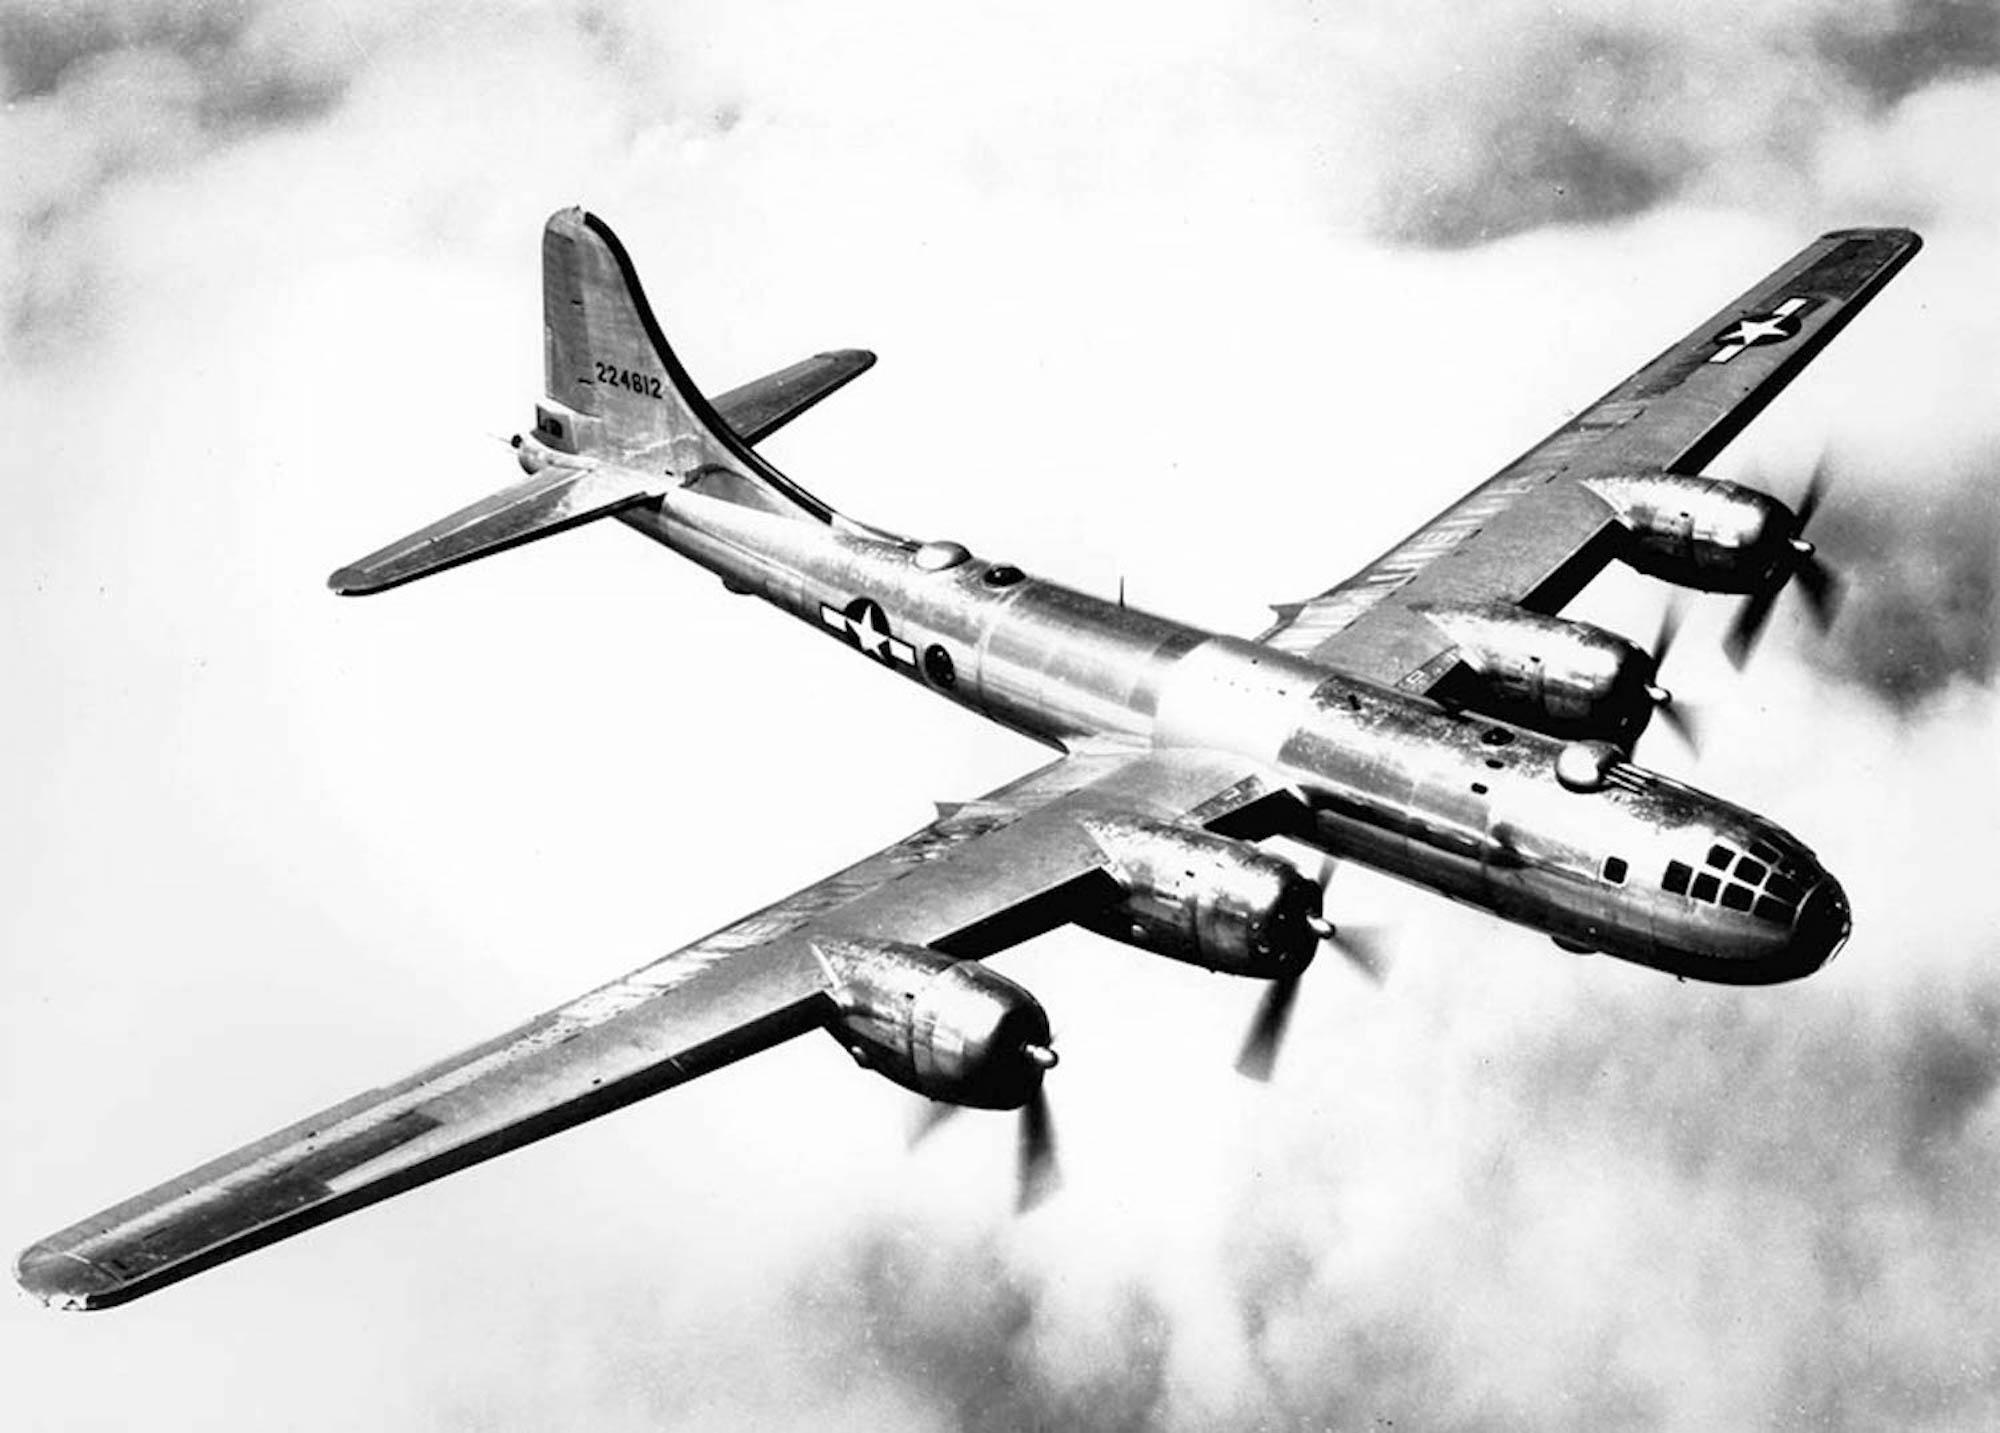 A B-29 in flight.